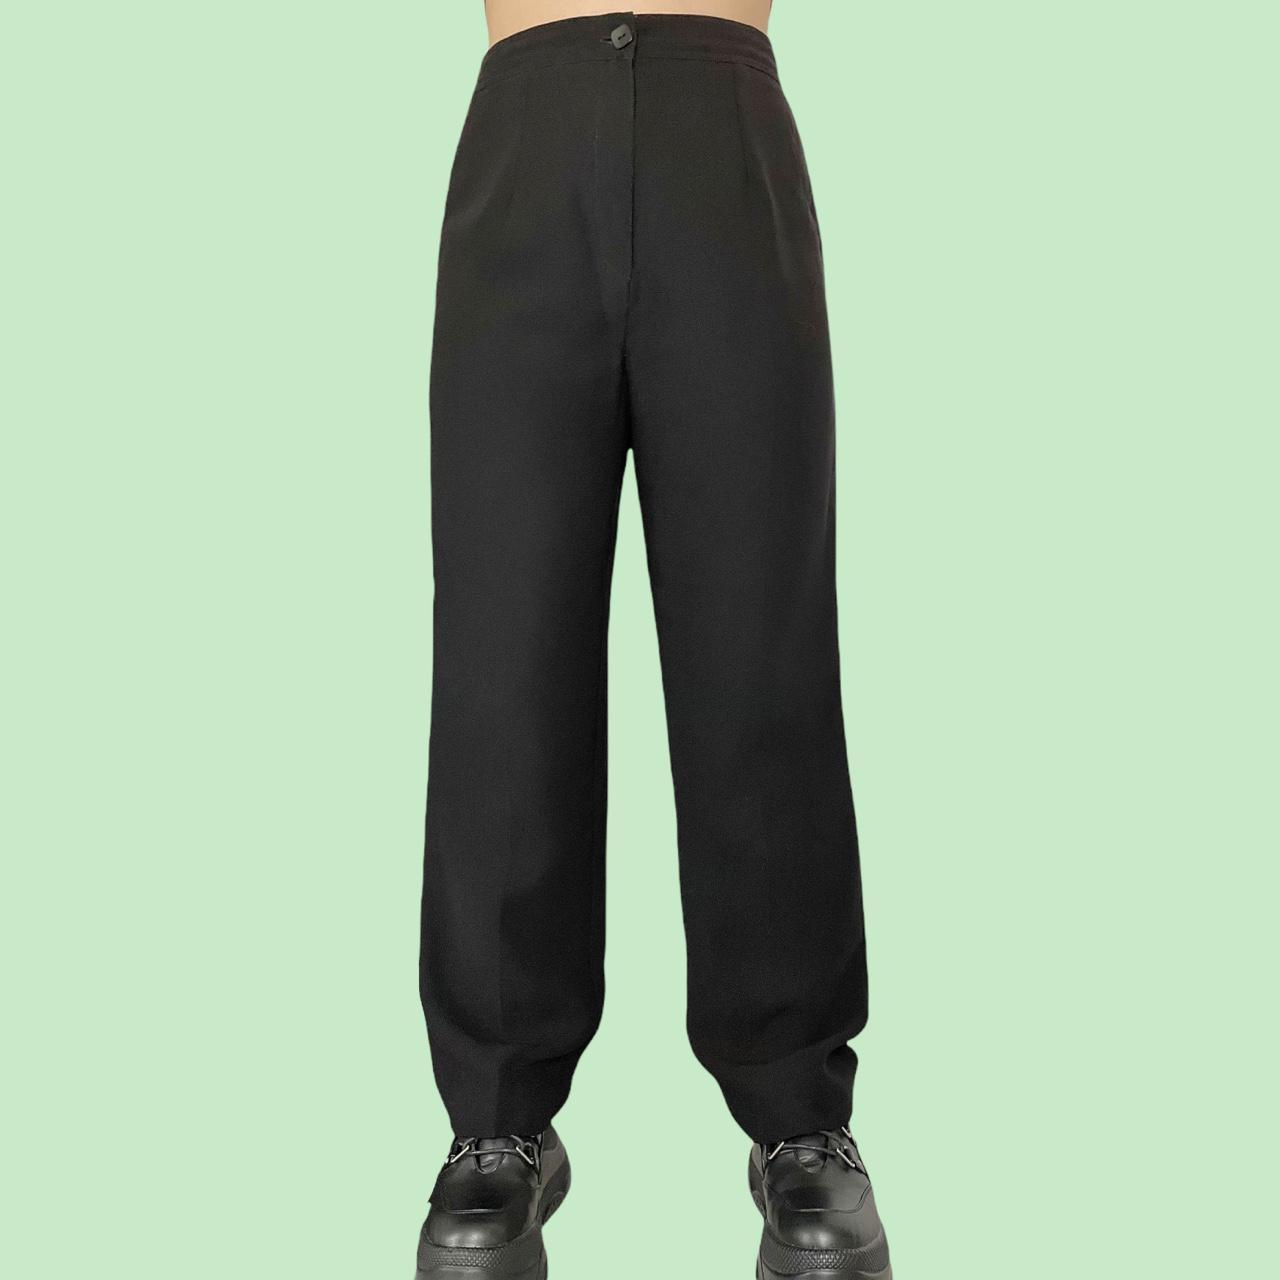 Wallis Women's Black Trousers (2)